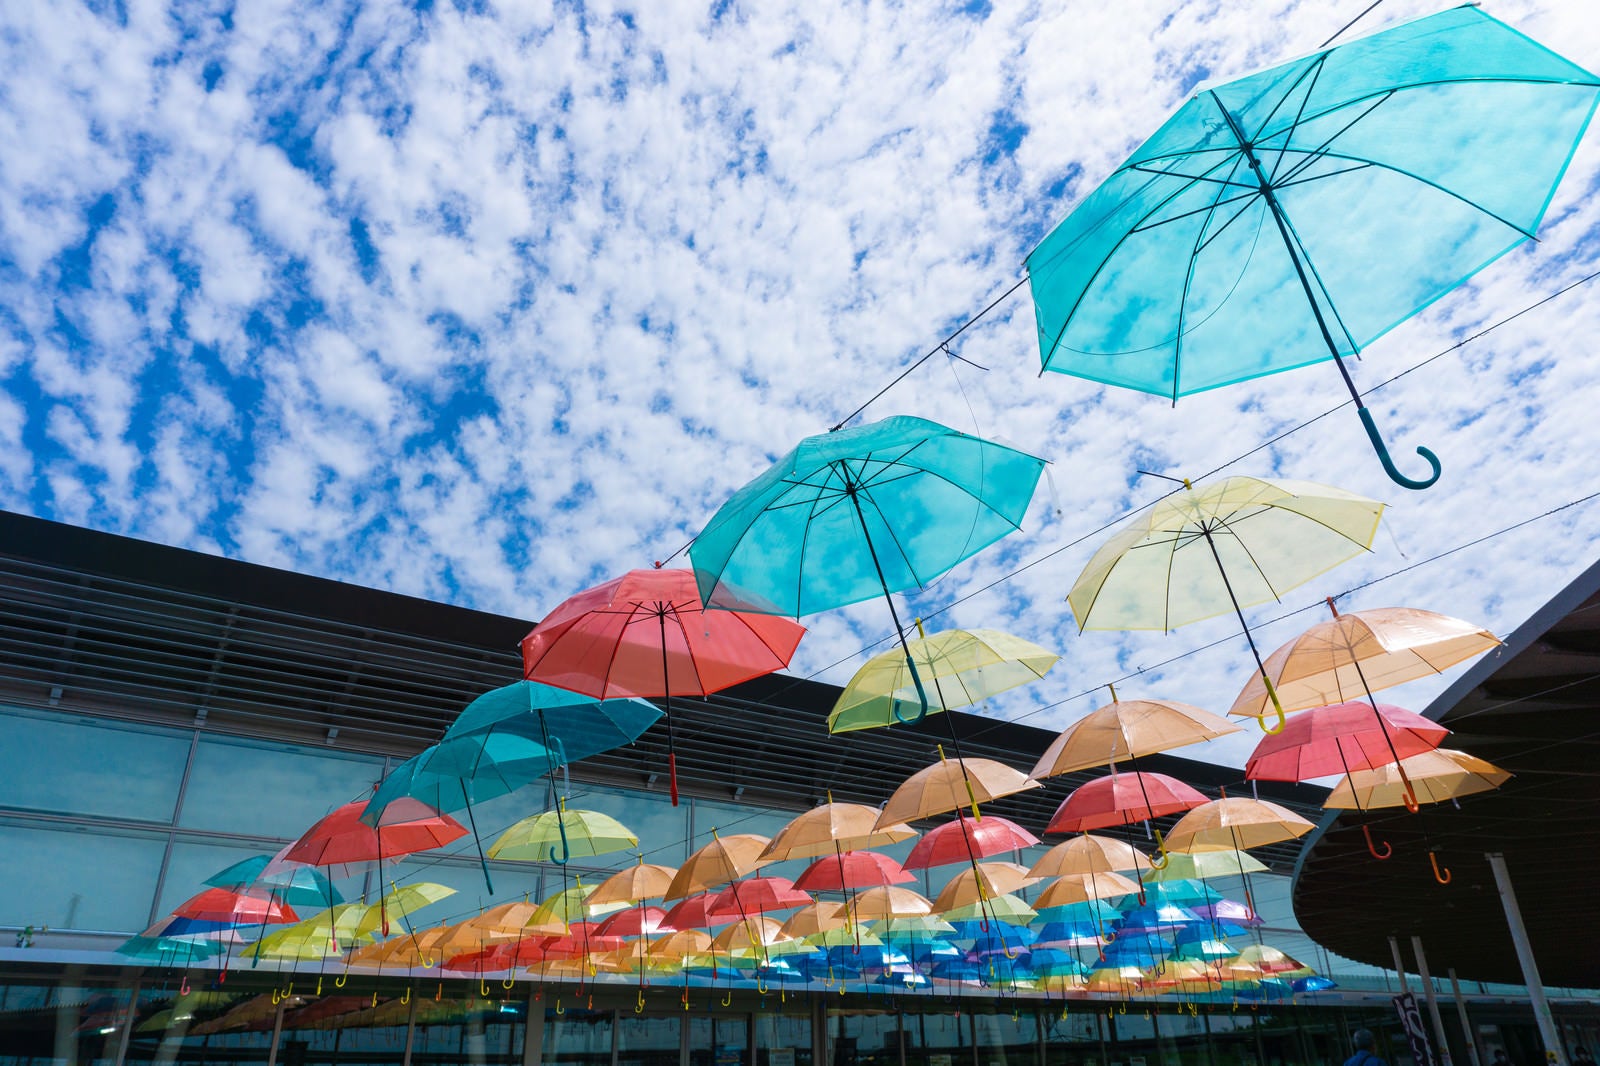 「道の駅「パレットピアおおの」のカラフルな傘を見上げて楽しむアンブレラスカイと羊雲」の写真